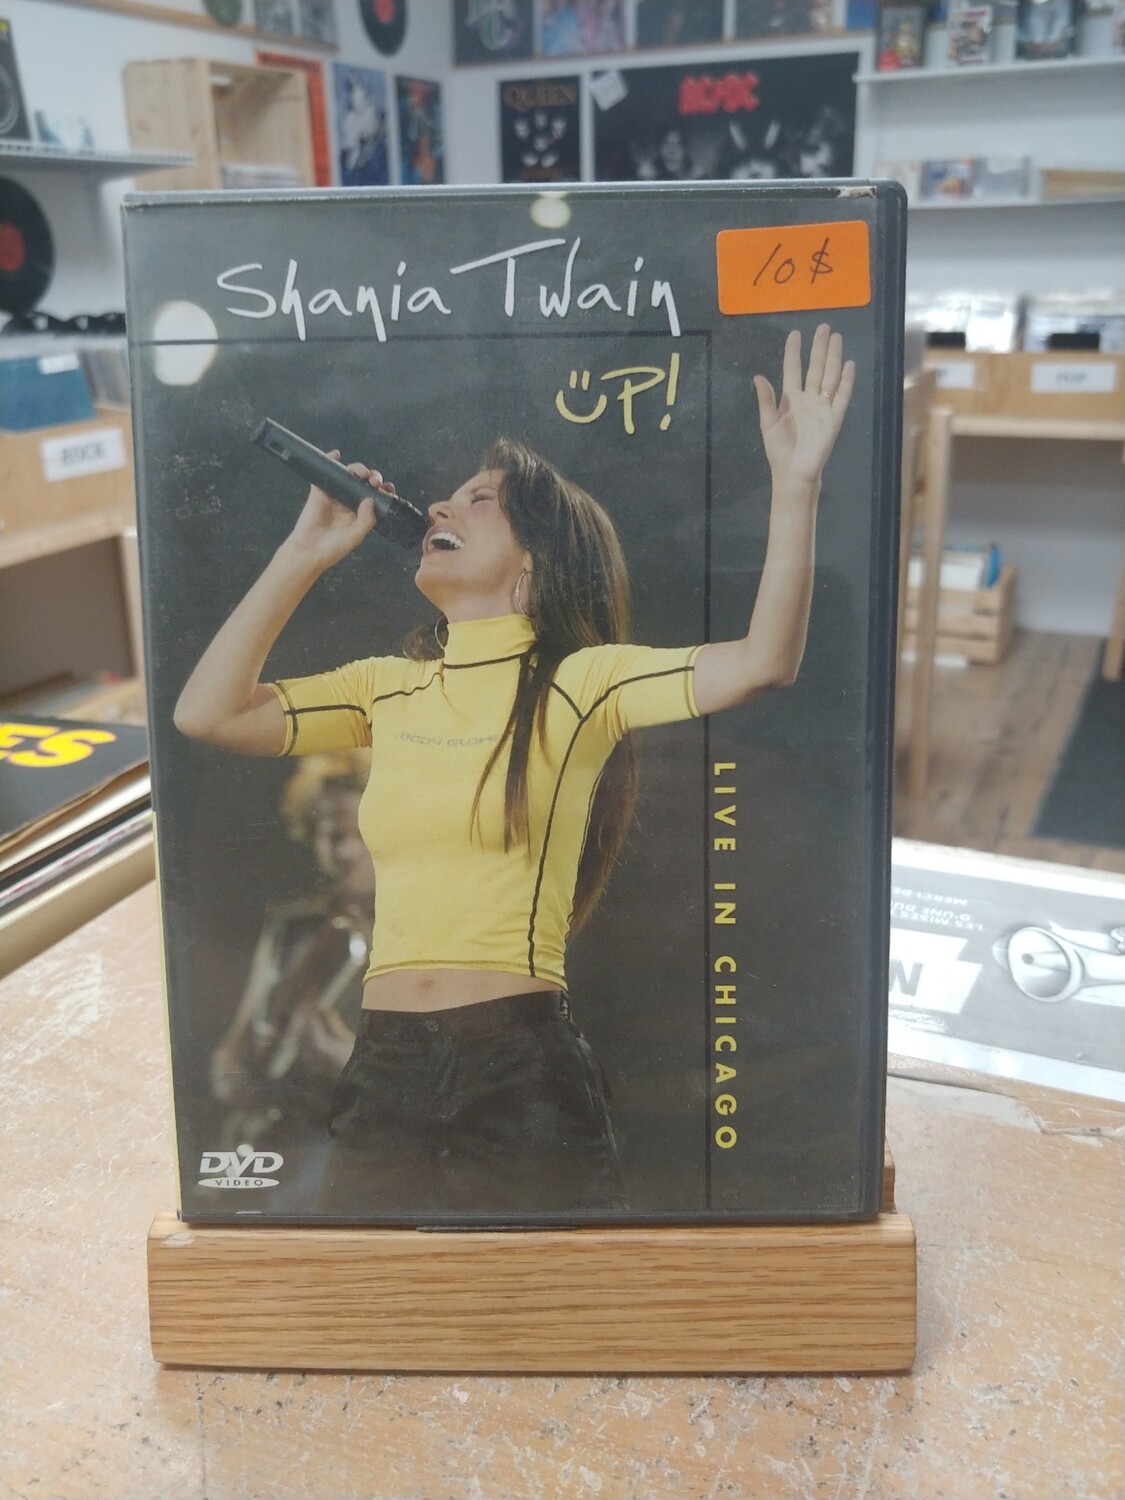 Shania Twain - Up (DVD)